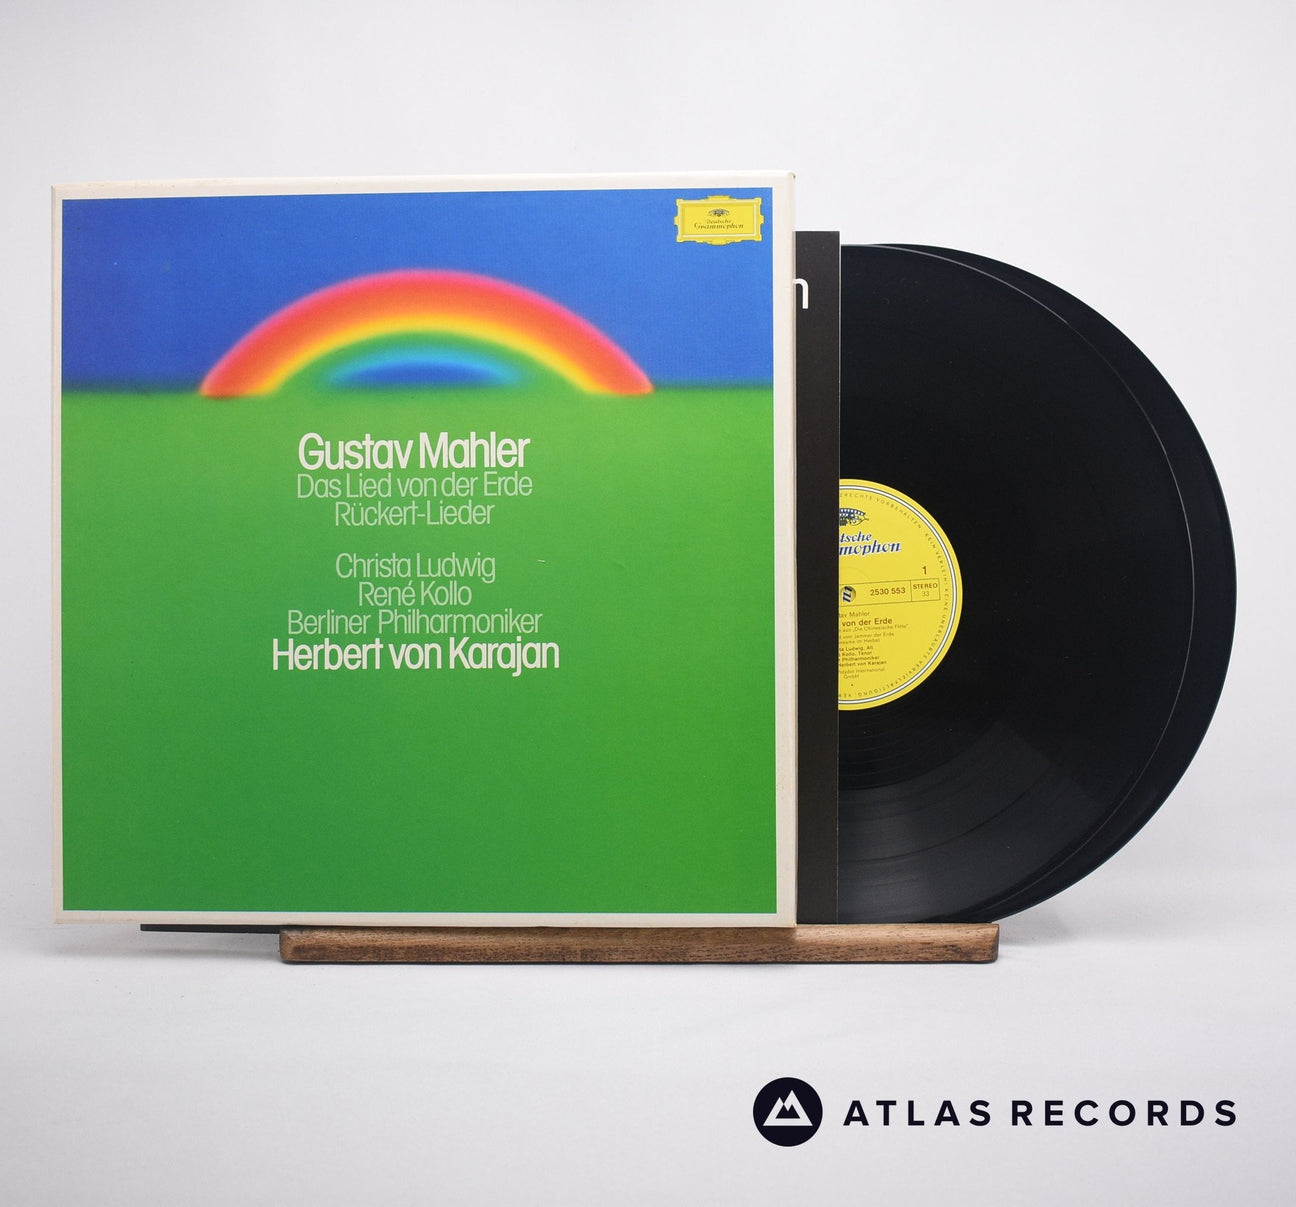 Gustav Mahler Das Lied Von Der Erde - Rückert-Lieder Double LP Box Set Vinyl Record - Front Cover & Record